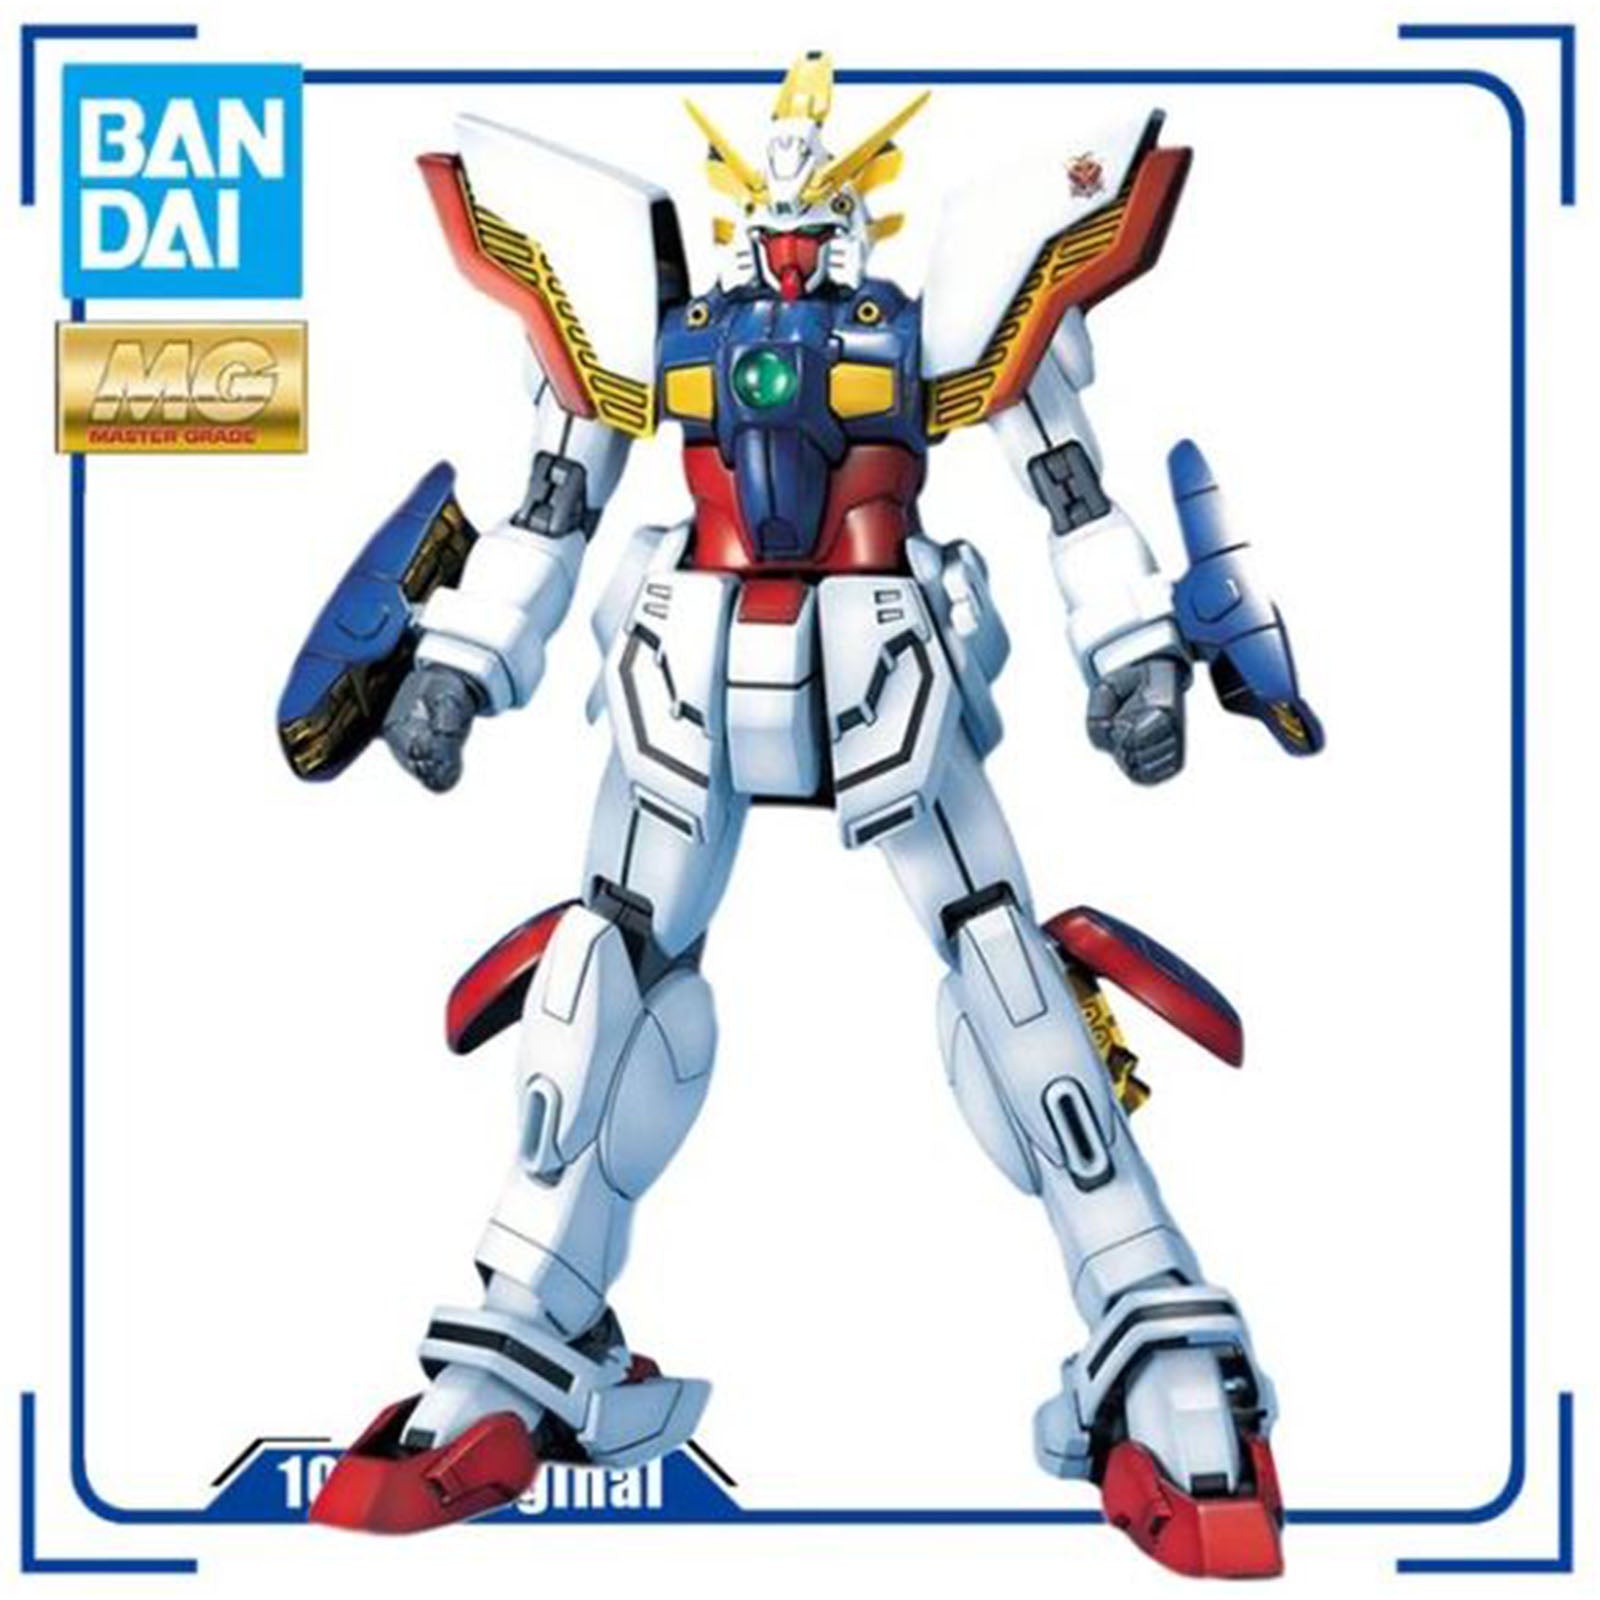 Bandai G Gundam MG Shining Gundam GF13-017NJ 1:100 Scale Model Kit 